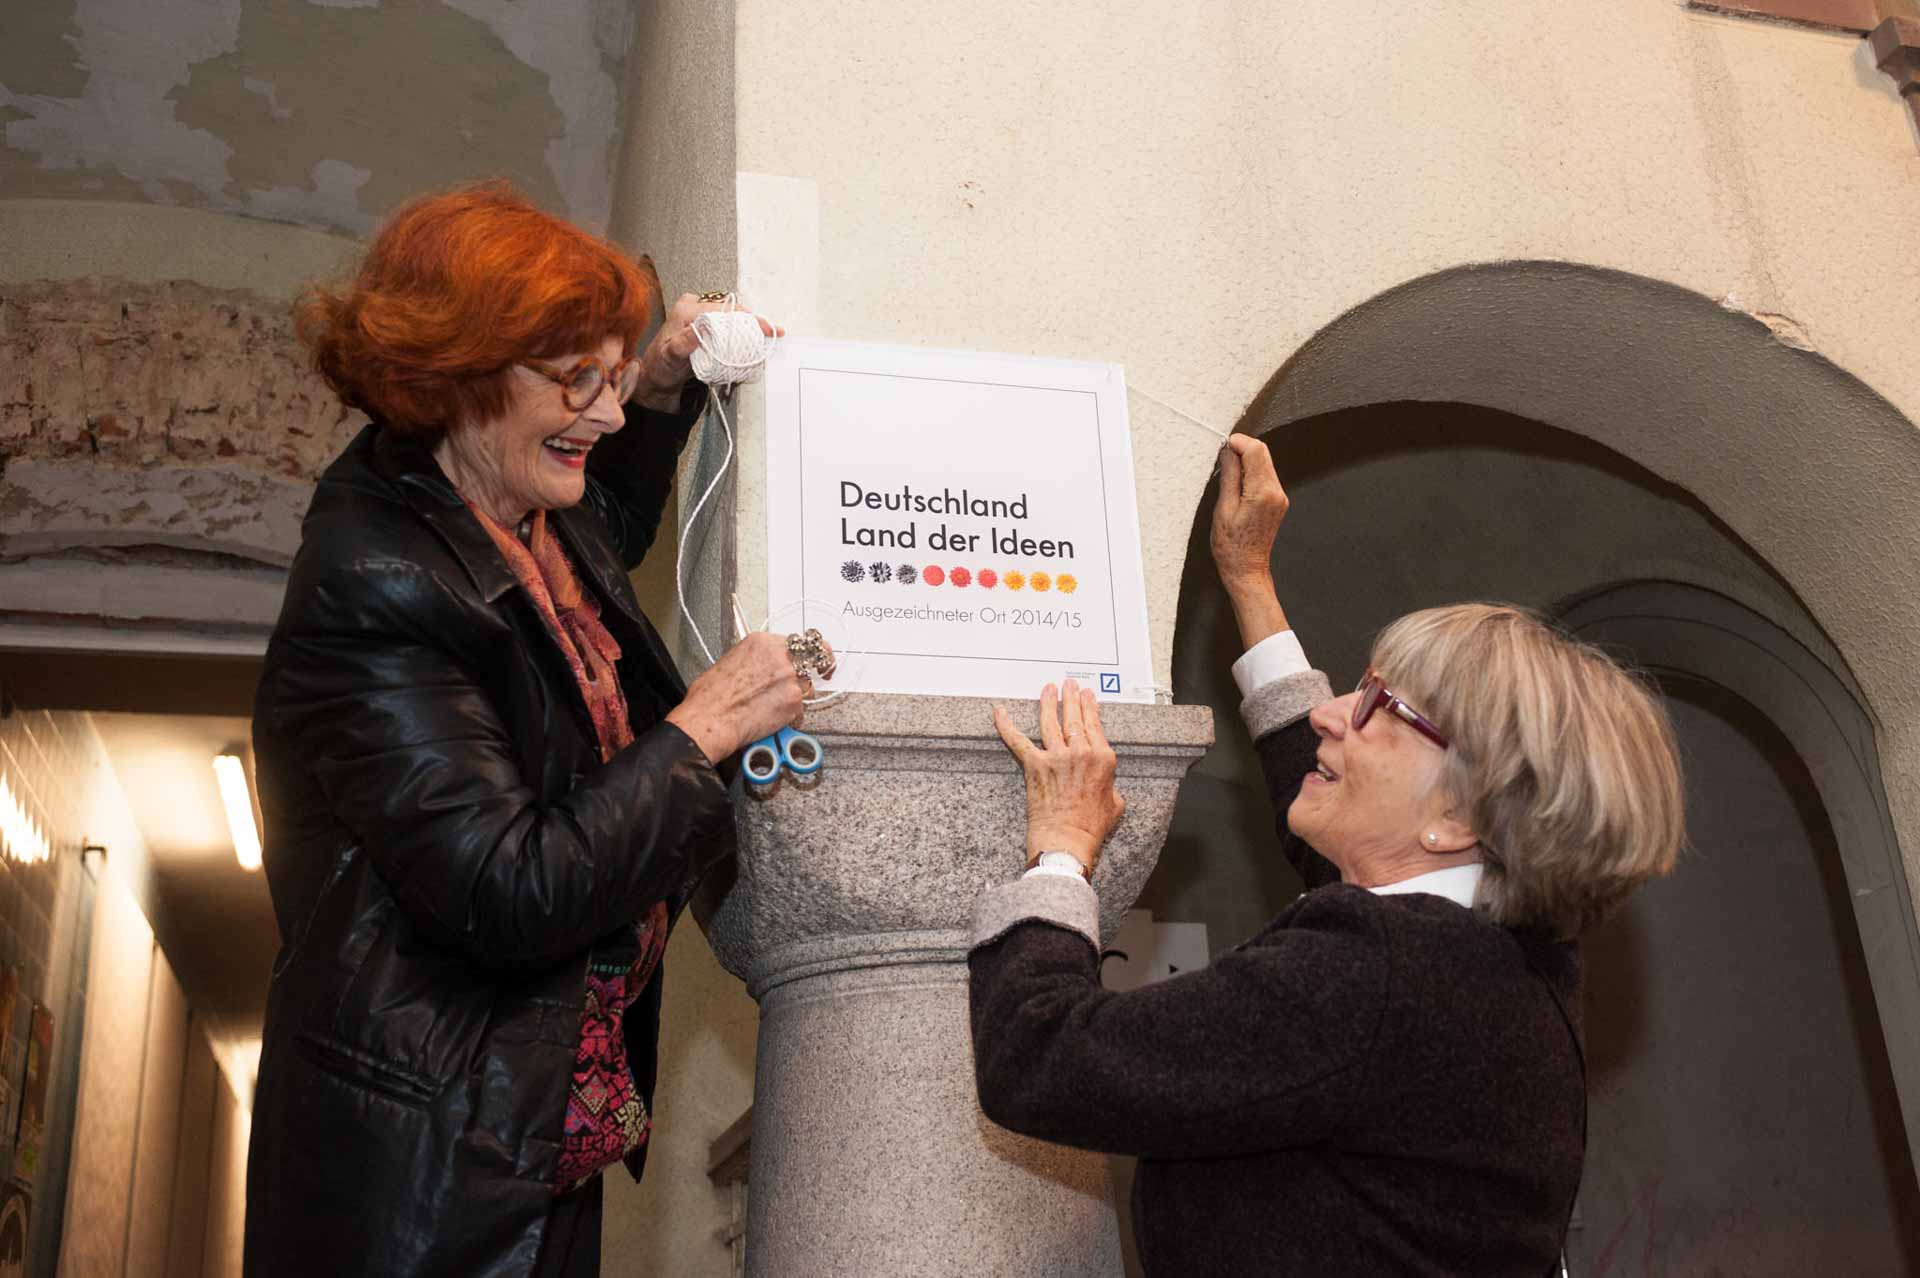 Preisverleihung „Ausgezeichnete Orte im Land der Ideen“ 2014/15. Fotoreportage im Theater Altes Hallenbad in Friedberg / Wetterau.